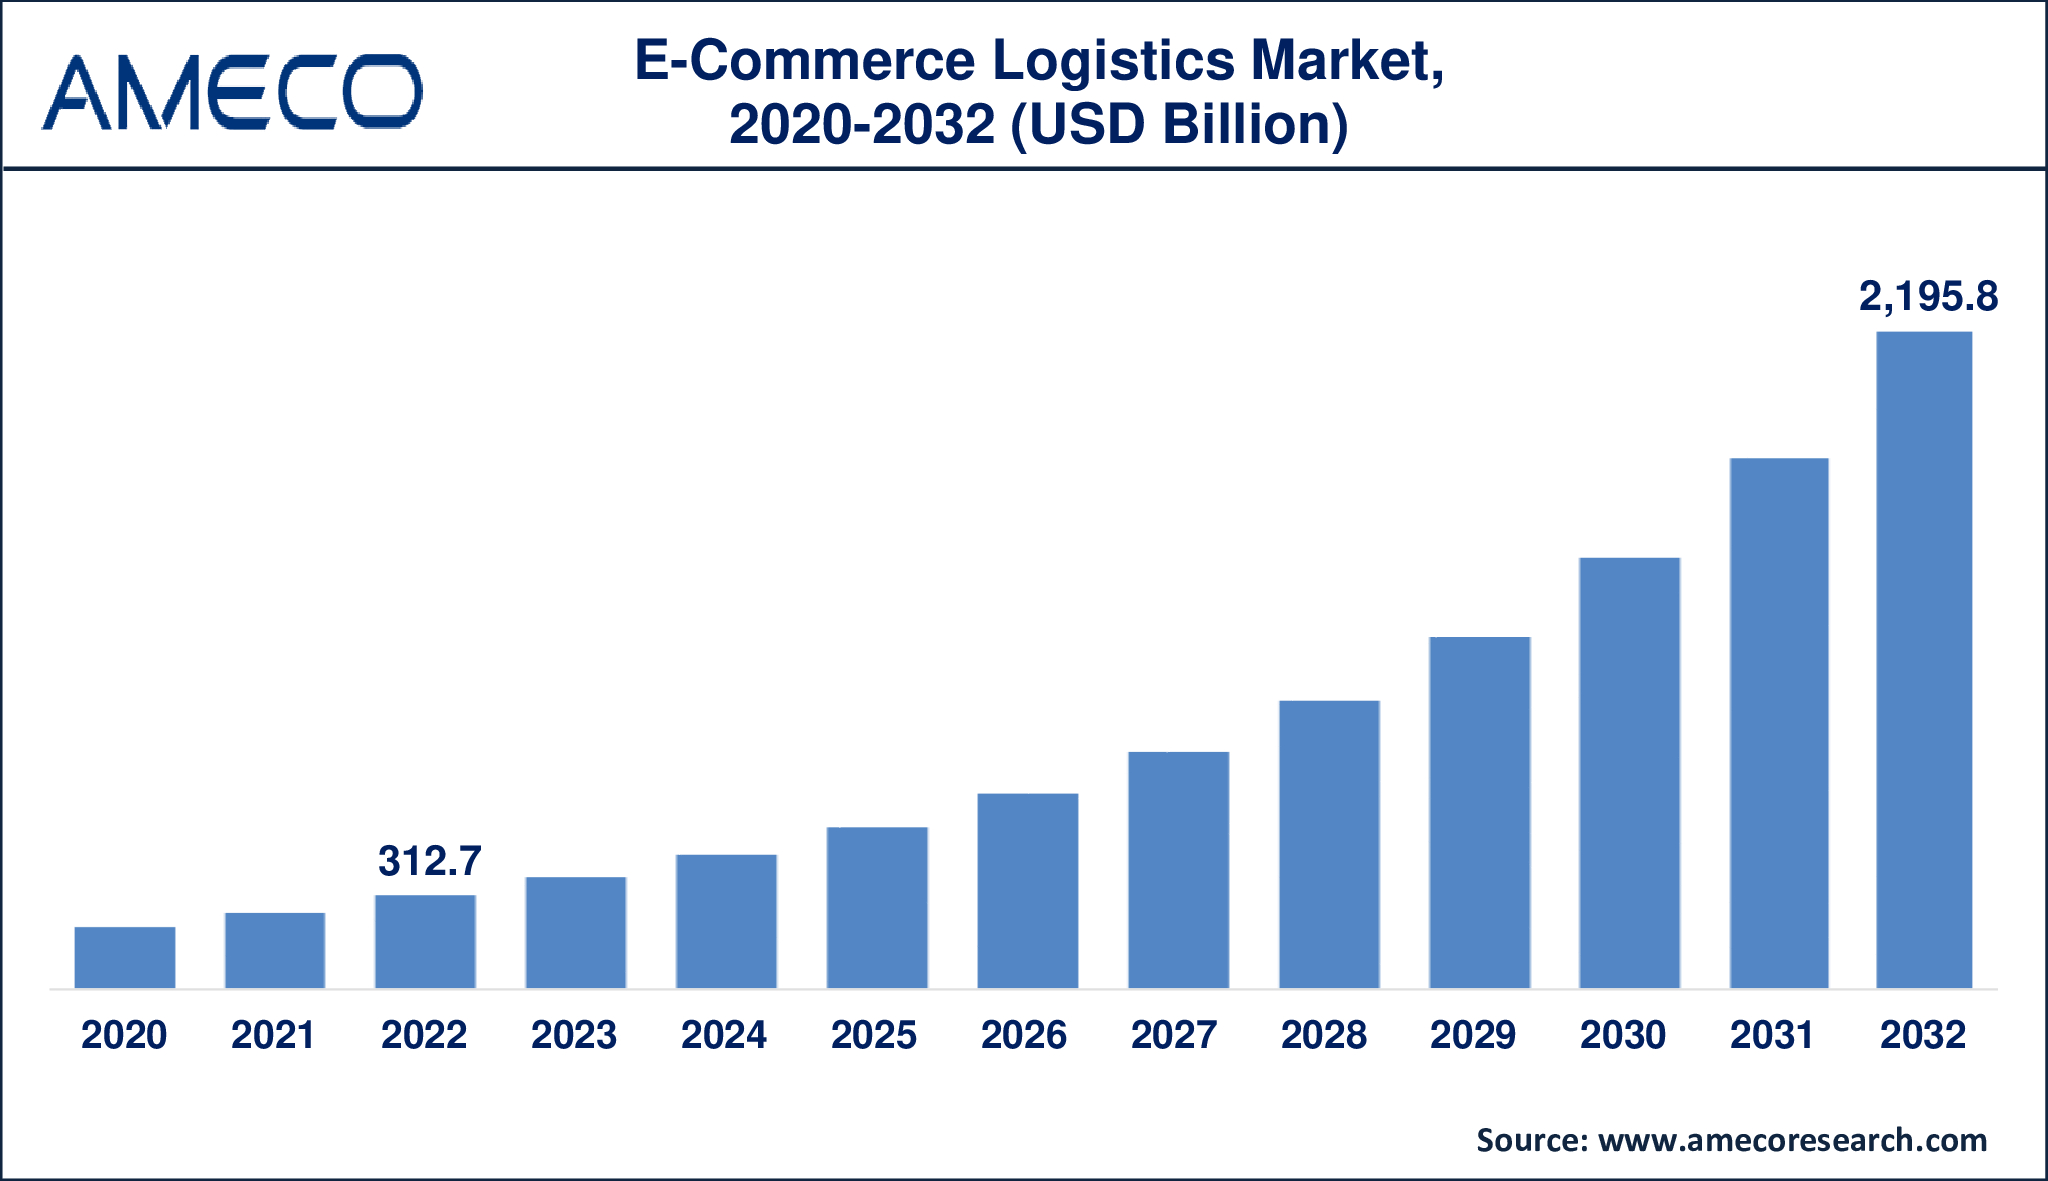 E-Commerce Logistics Market Dynamics